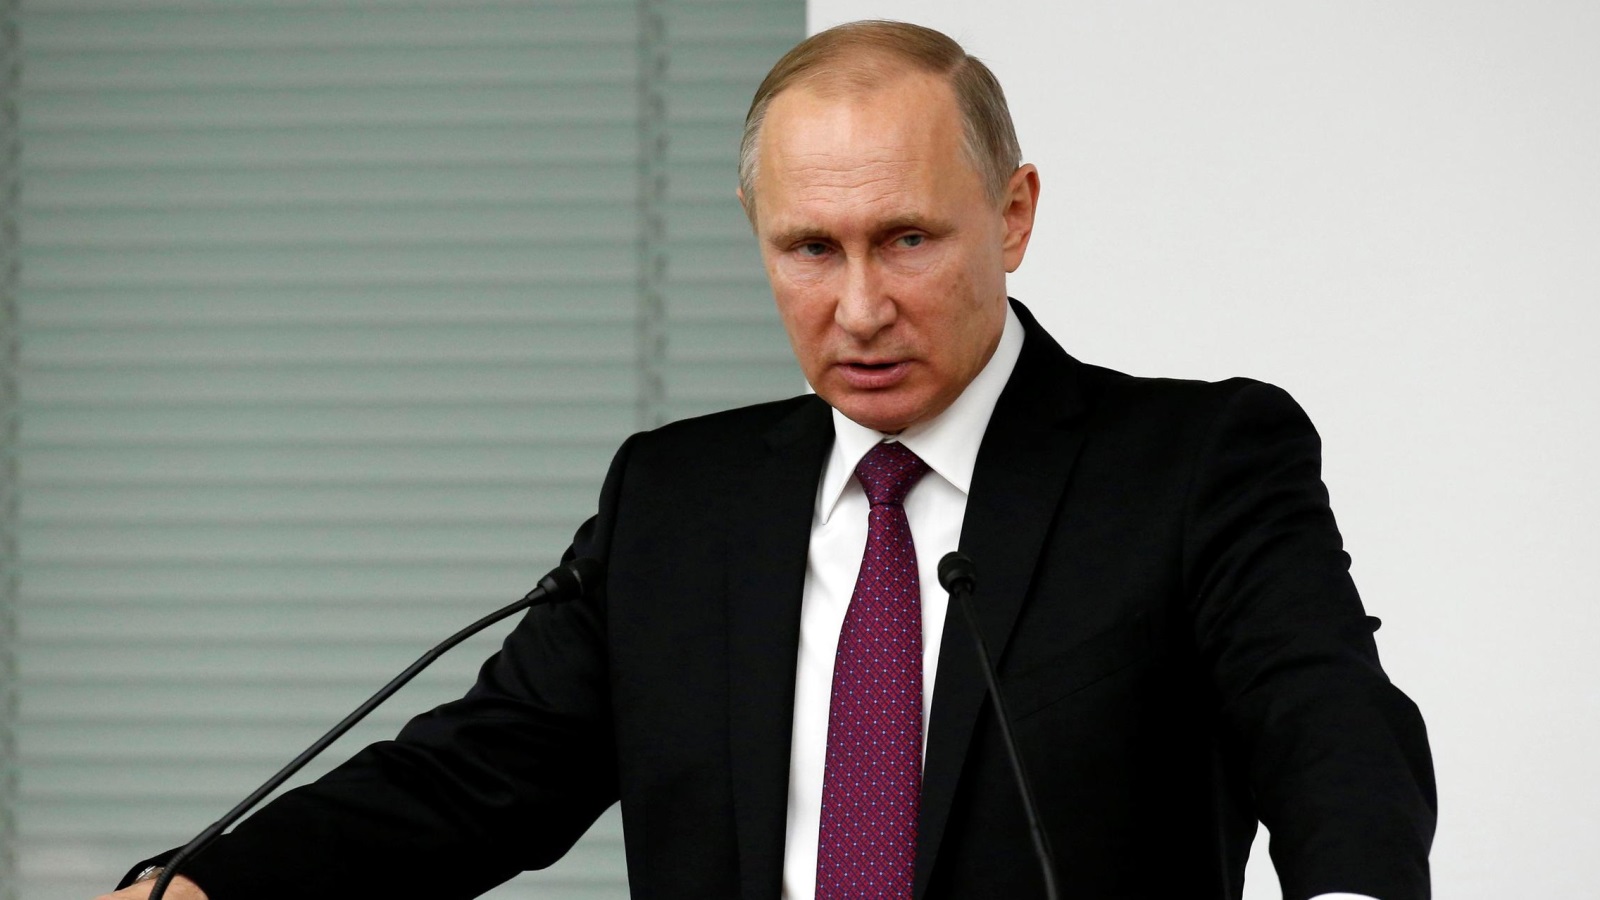 ‪بوتين أعلن الجمعة الماضي عن اجتماعات مرتقبة في كزاخستان لحل الأزمة السورية‬  (رويترز)